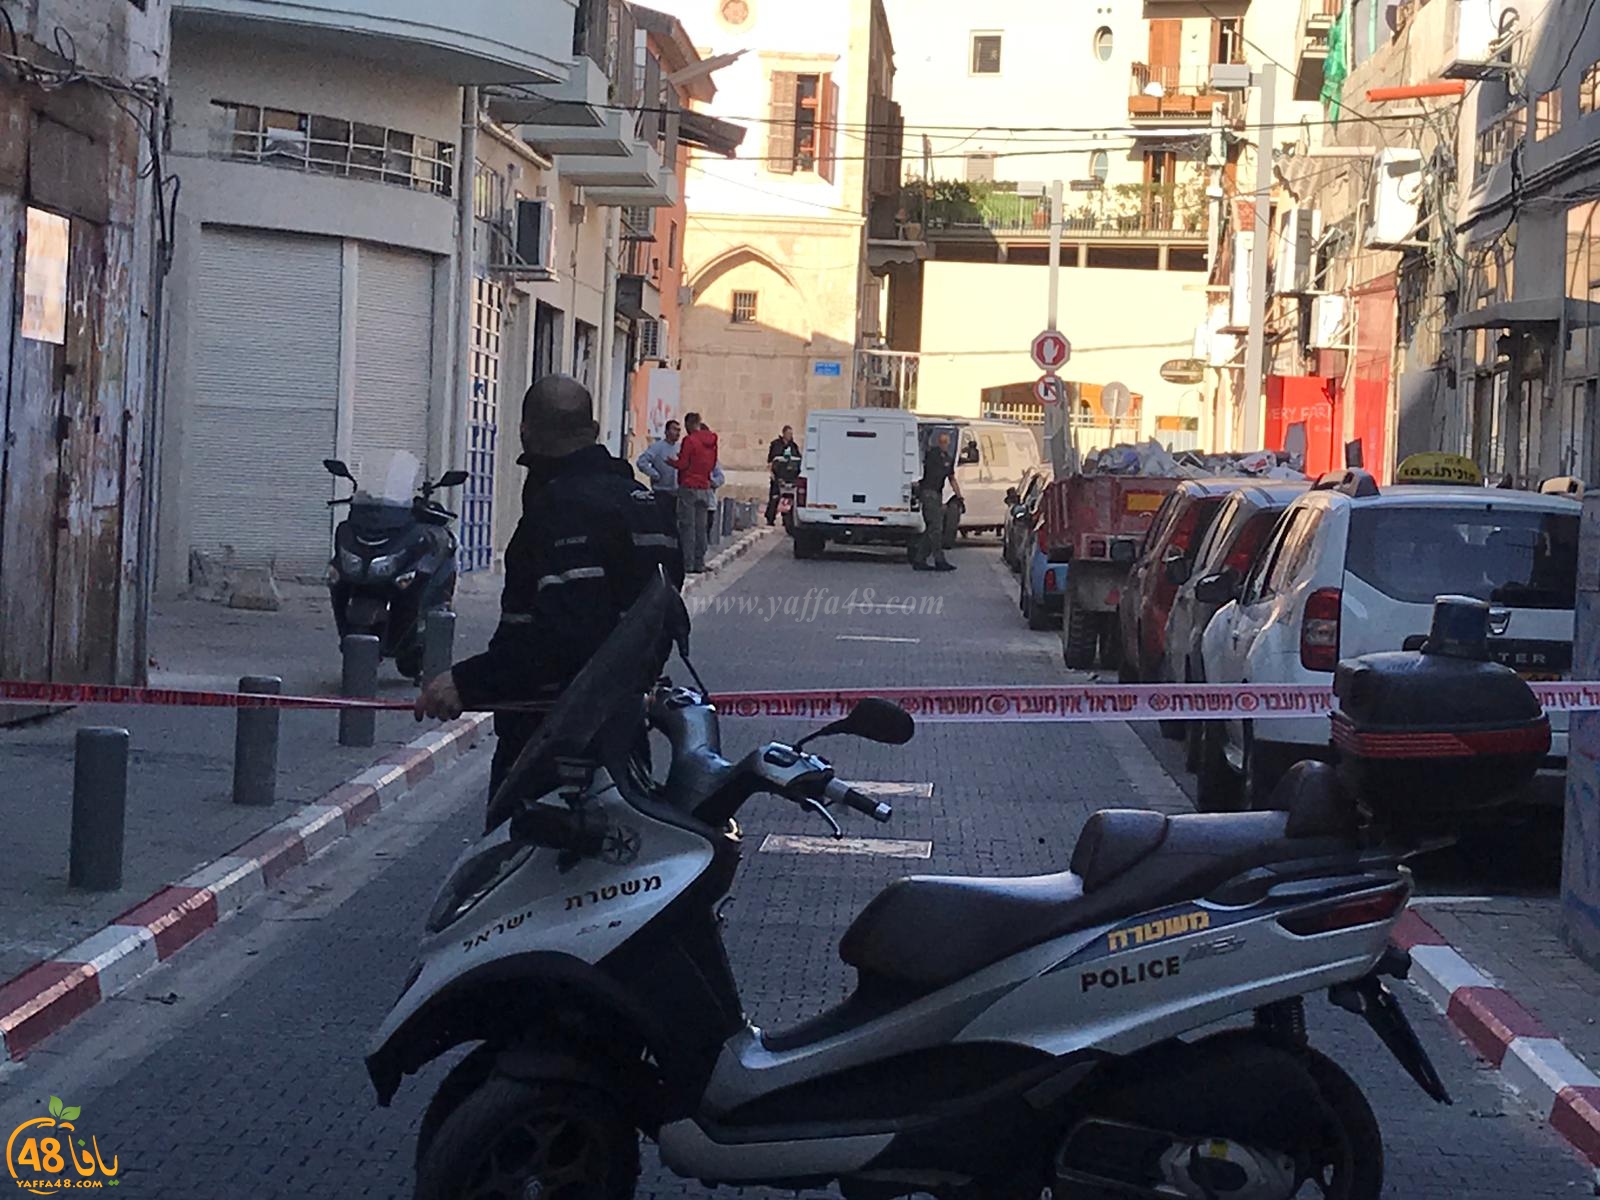   فيديو: الشرطة تُغلق شارعاً بيافا لمعالجة جسم مشبوه